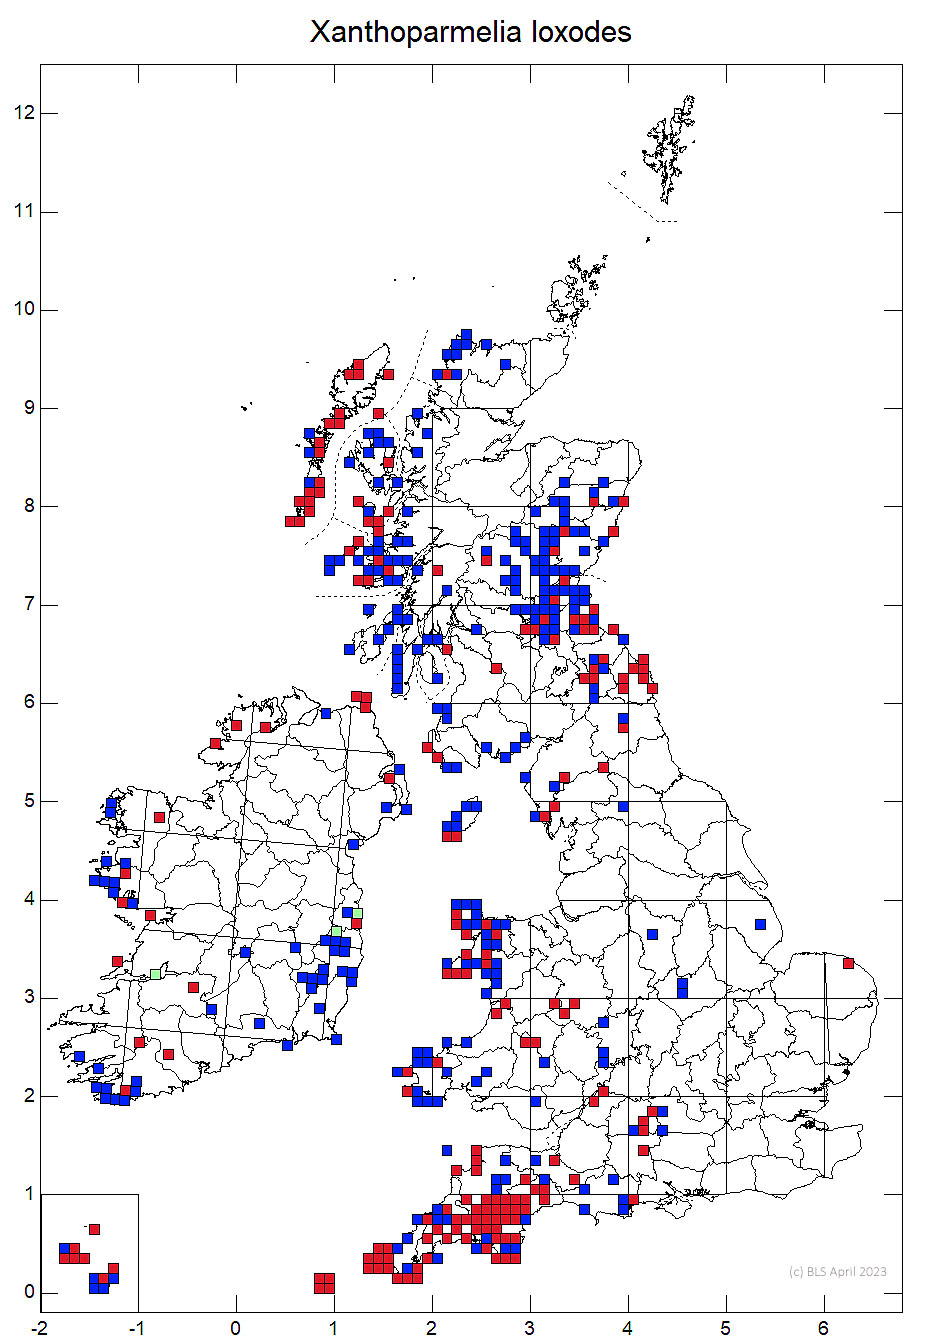 Xanthoparmelia loxodes 10km sq distribution map